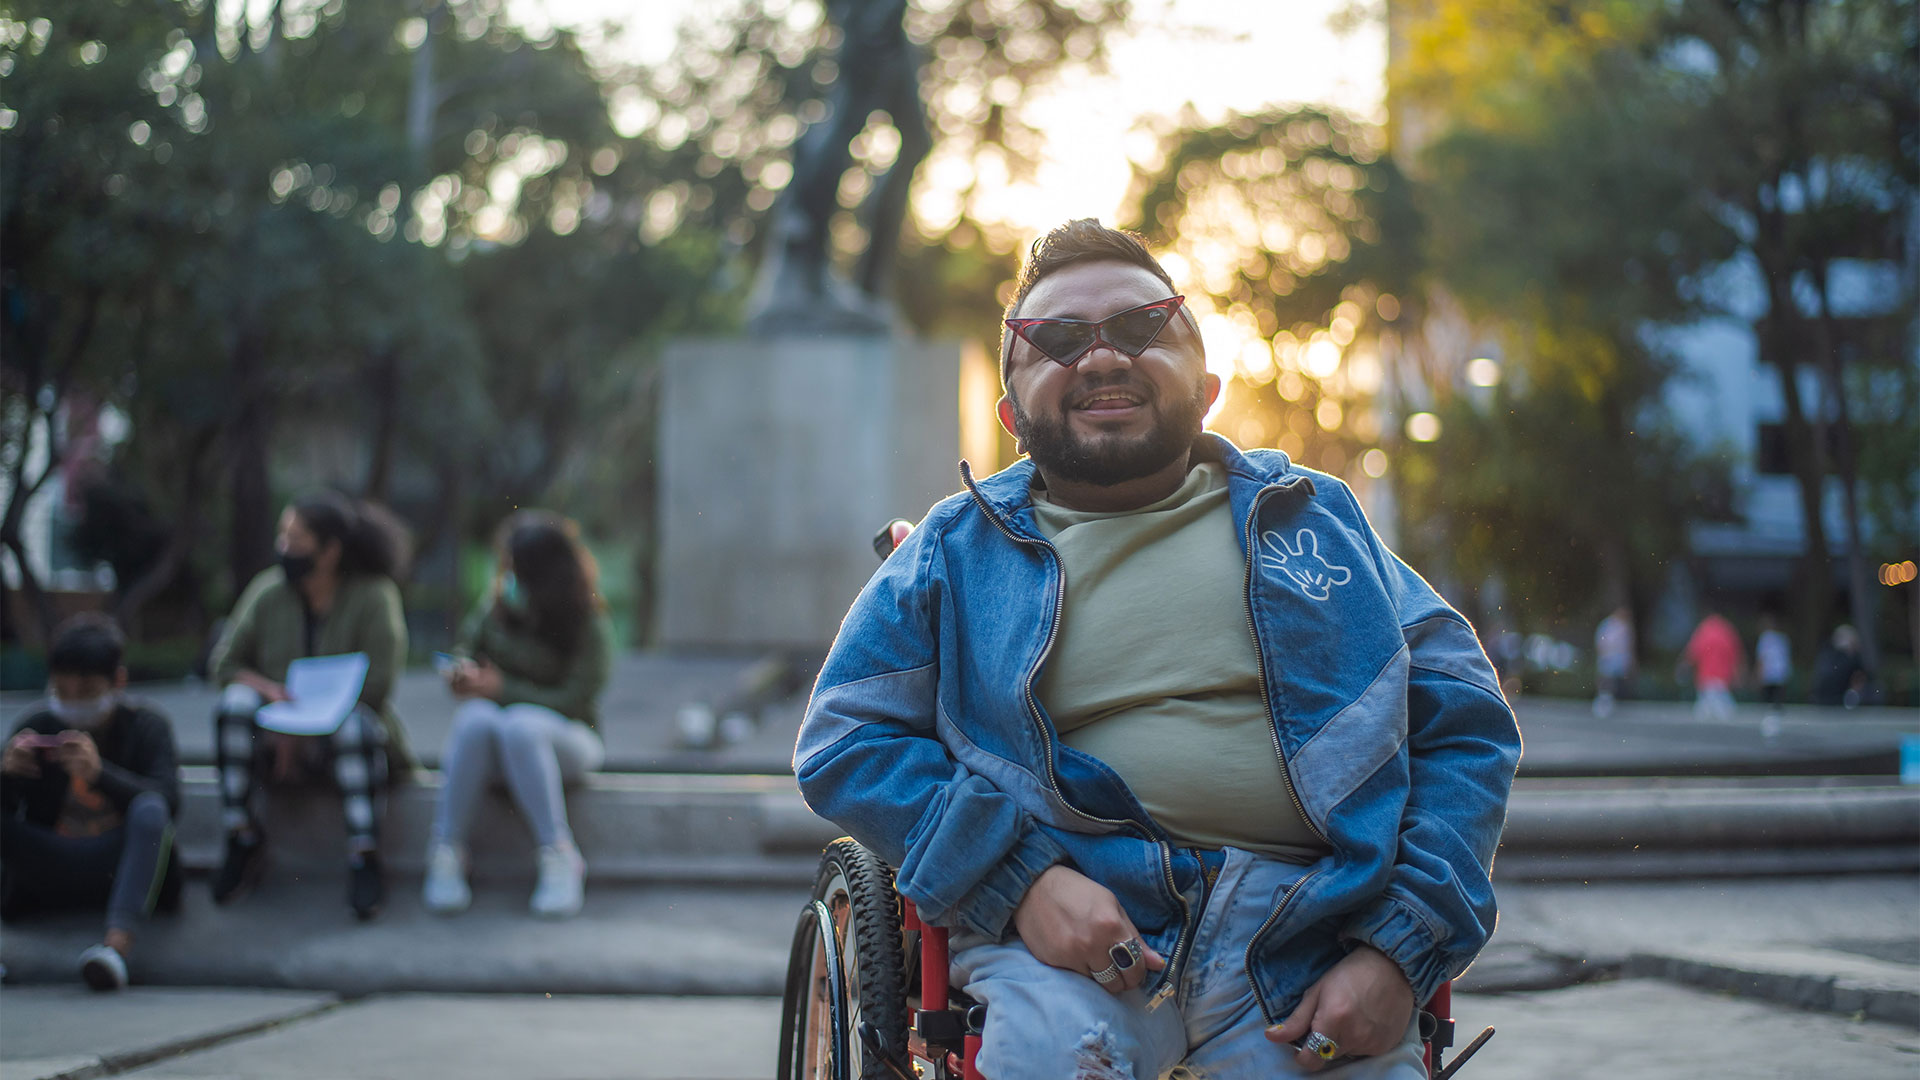 Ser gay y vivir con discapacidad: “Al principio lo ocultaba, pero ahora muestro mi silla en Grindr con orgullo”